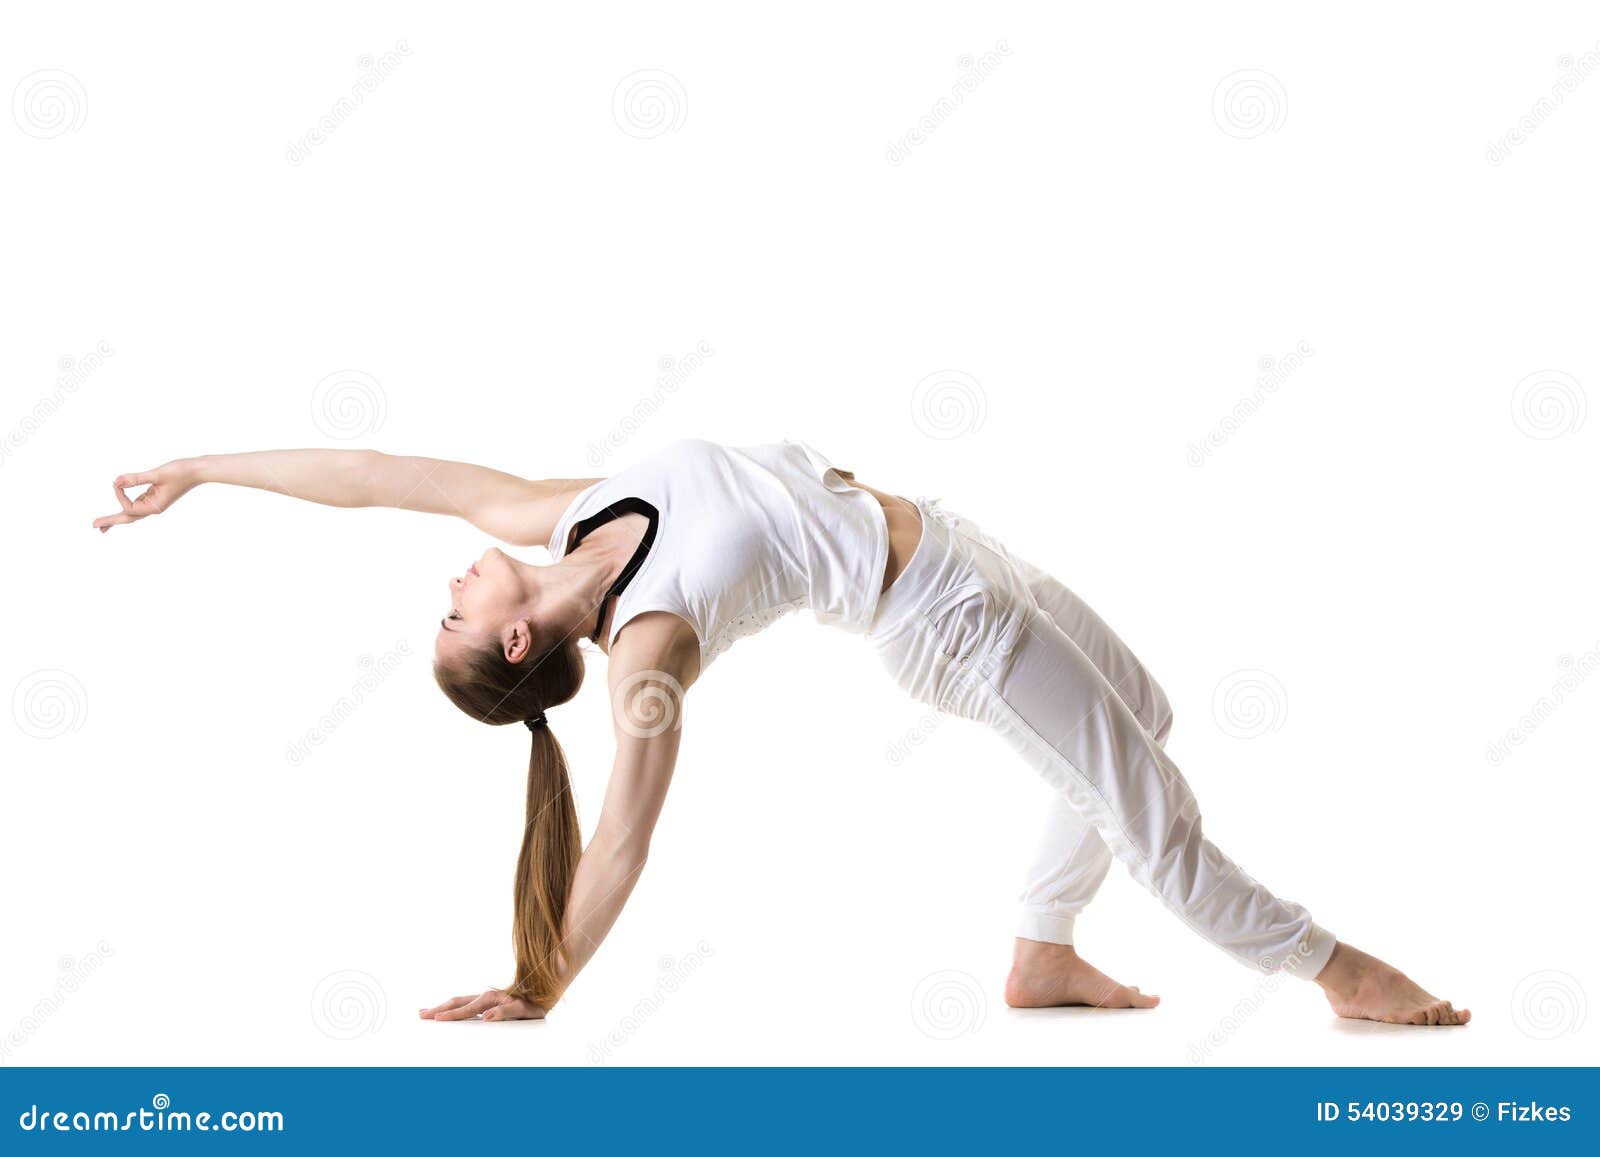 Yoga Pose  Wild Thing